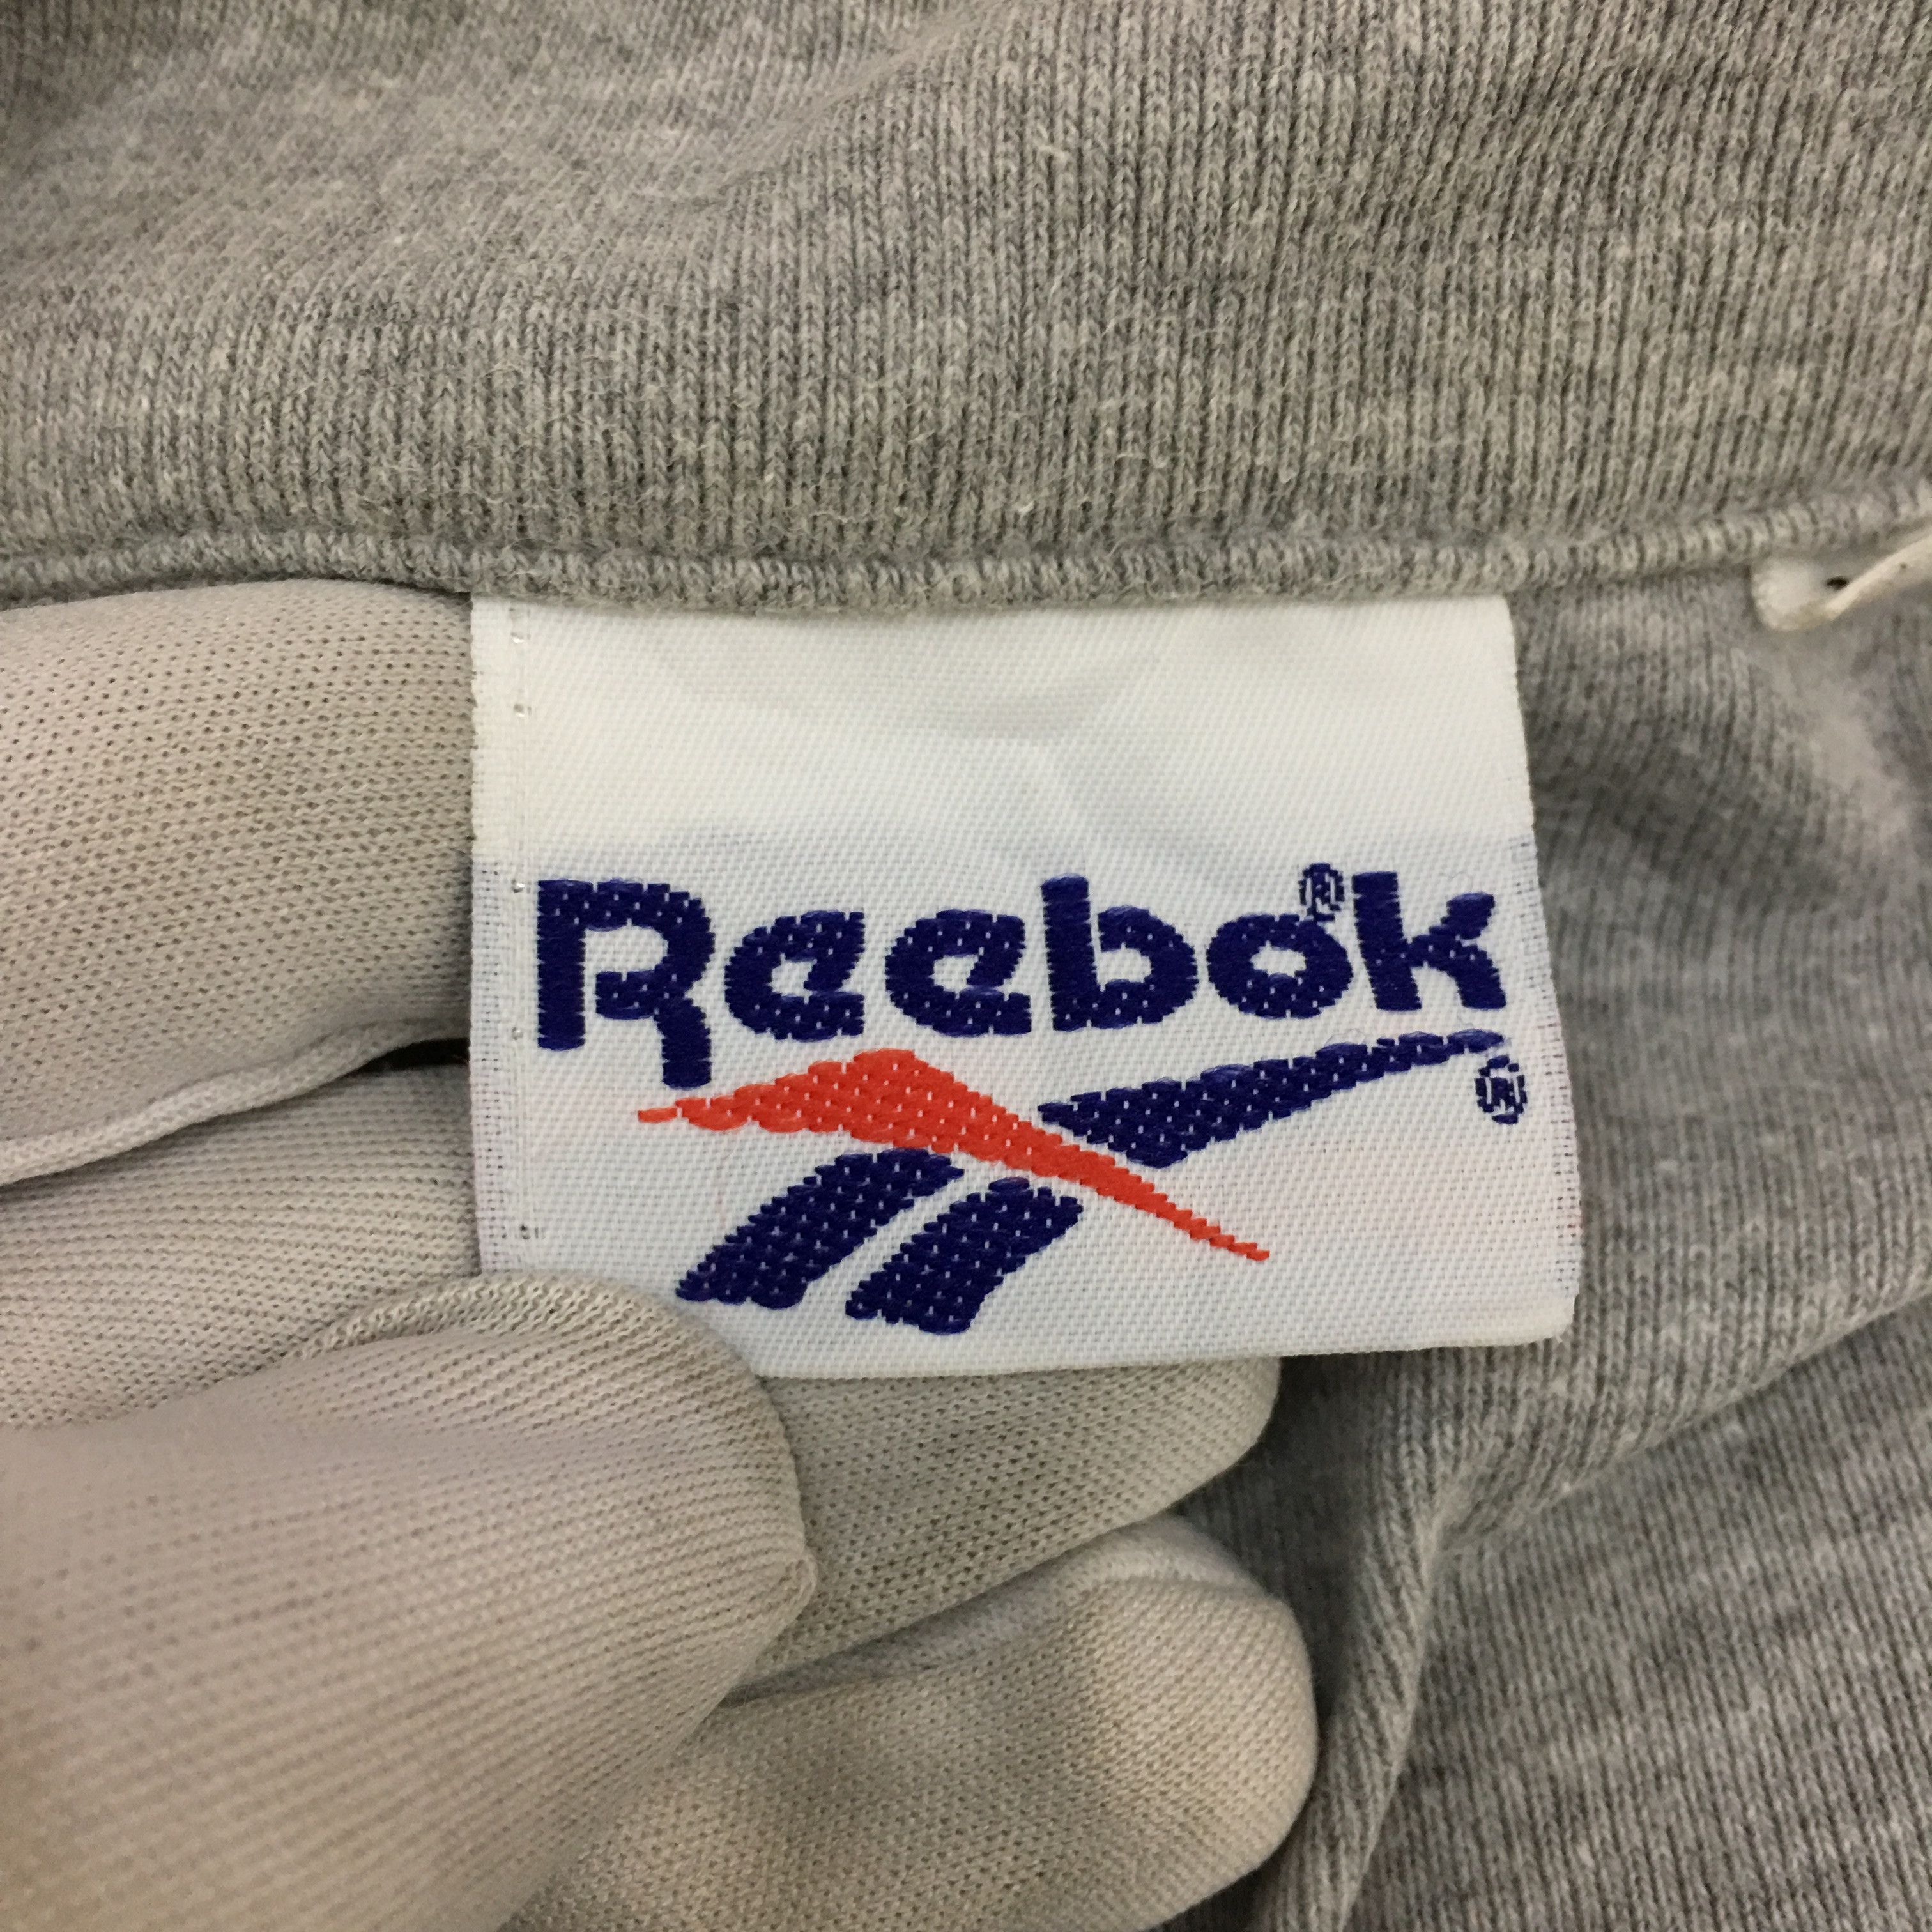 Reebok Vtg REEBOK Sportswear Sweatshirt Jumper Zip Gray Sweater Size M / US 6-8 / IT 42-44 - 9 Thumbnail